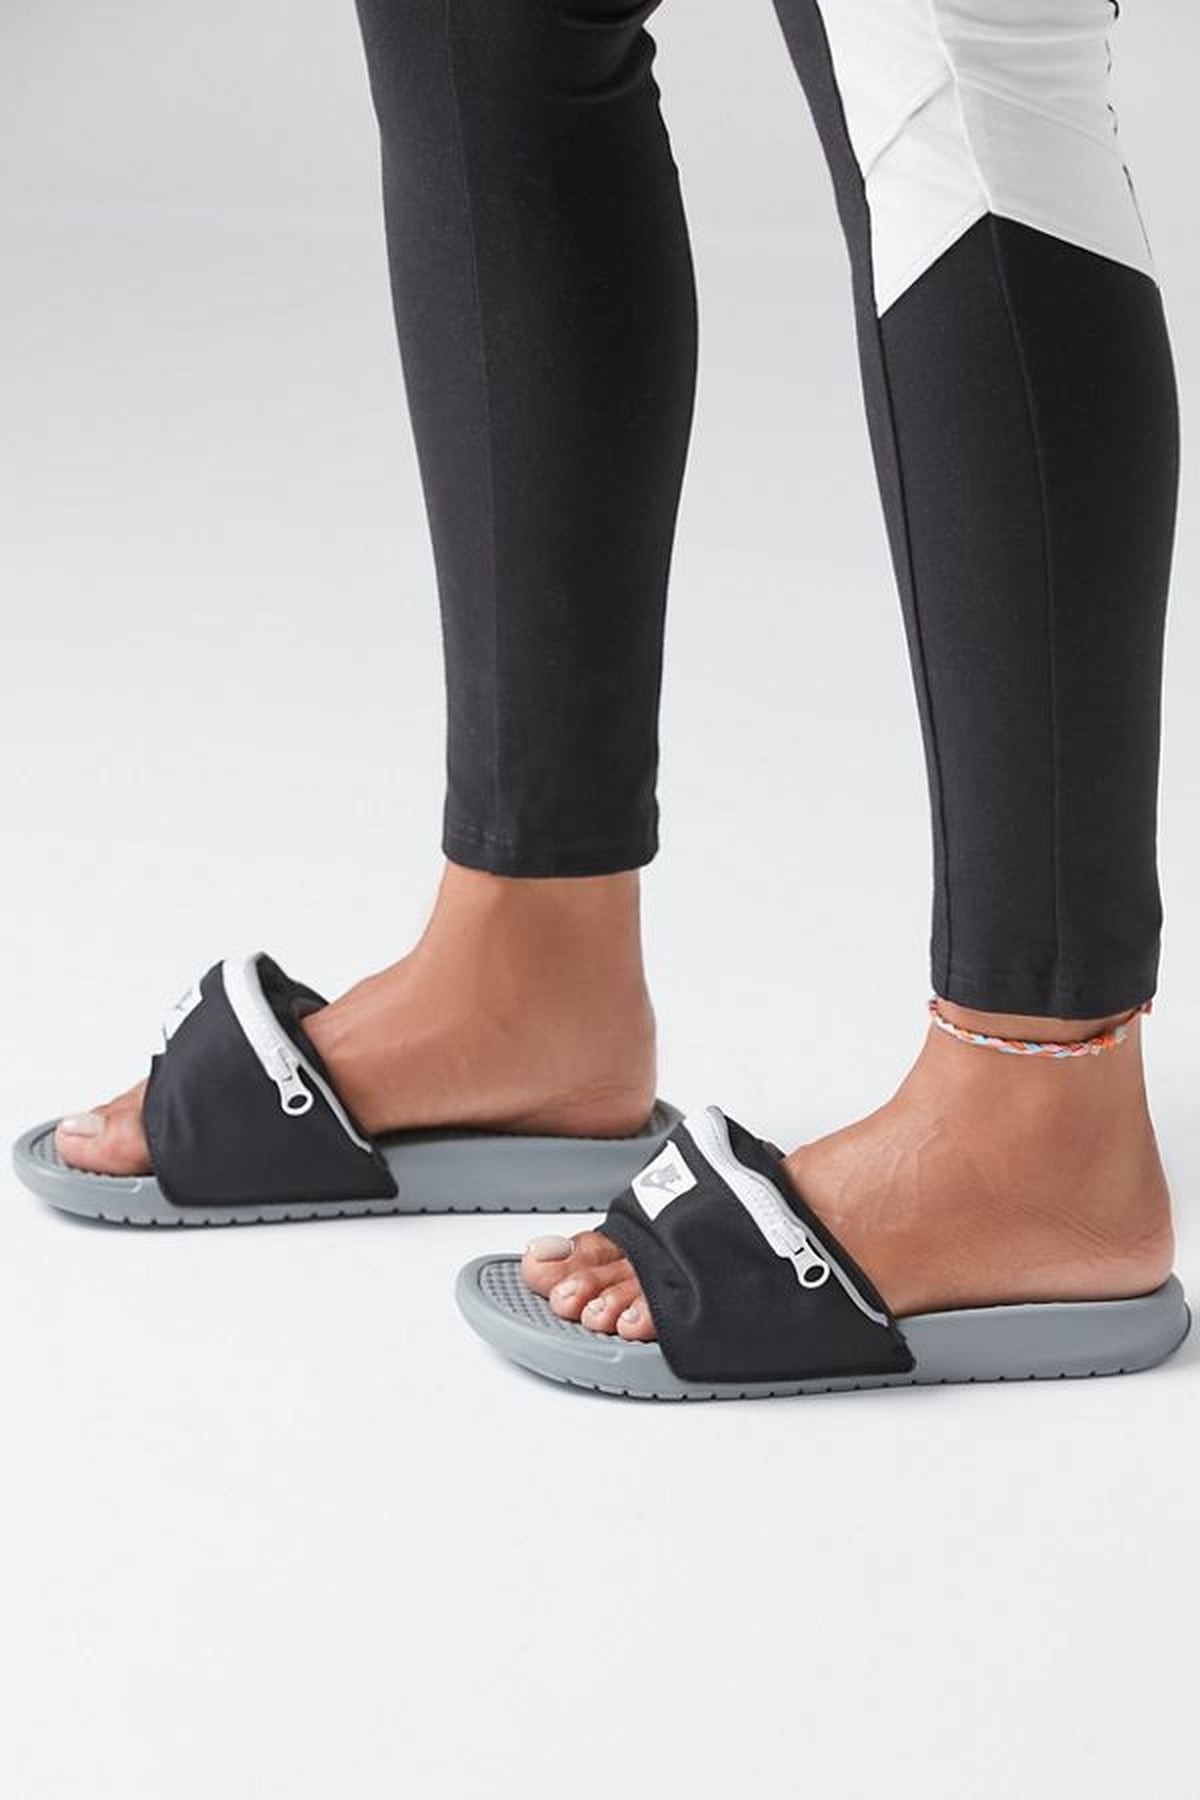 Nike Benassi Just Do It Fanny Pack Slide Sandals | POPSUGAR Fashion